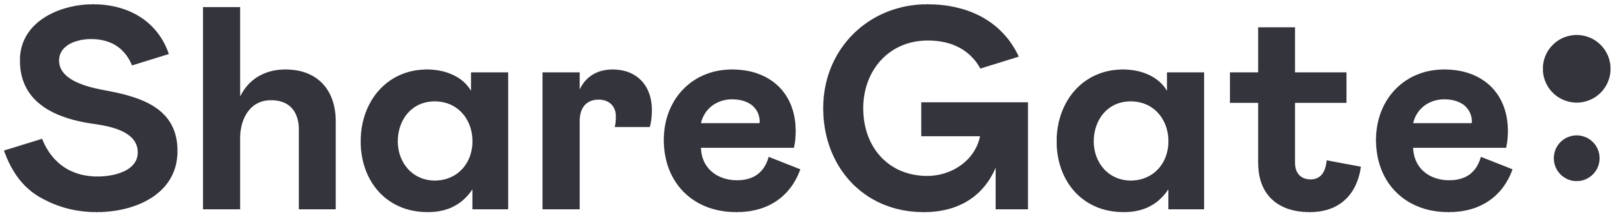 Sharegate logo